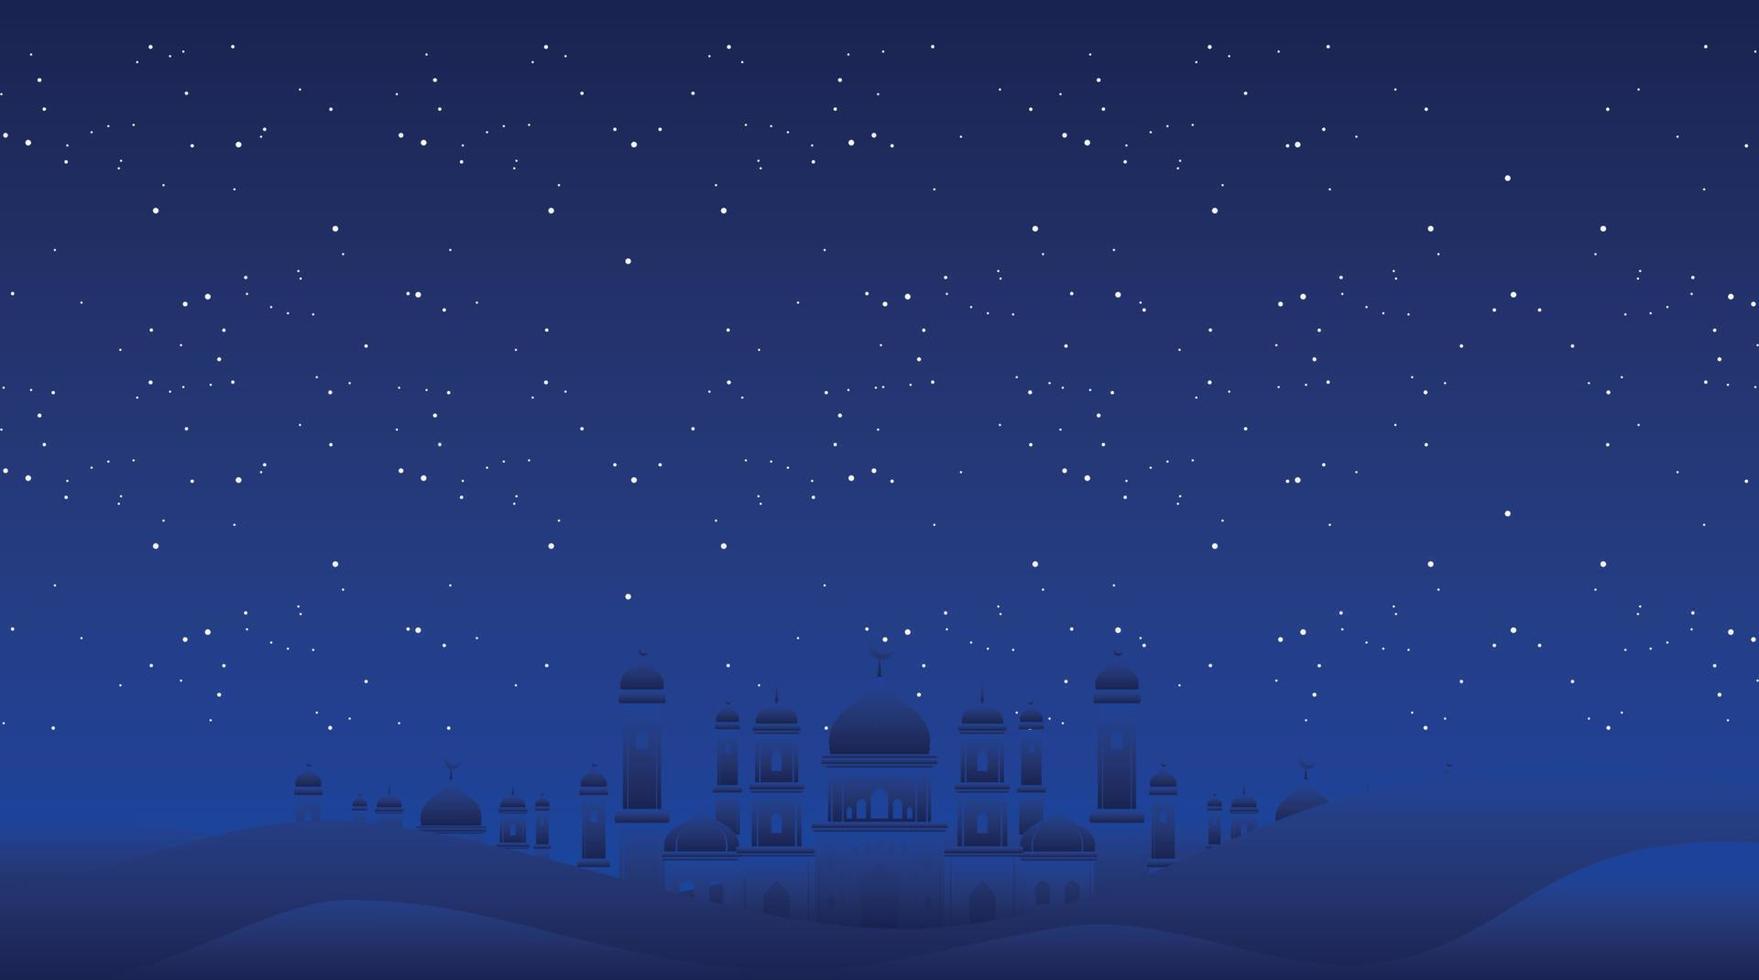 fondo islámico. fondo de eid mubarak. fondo de ramadán kareem. vector